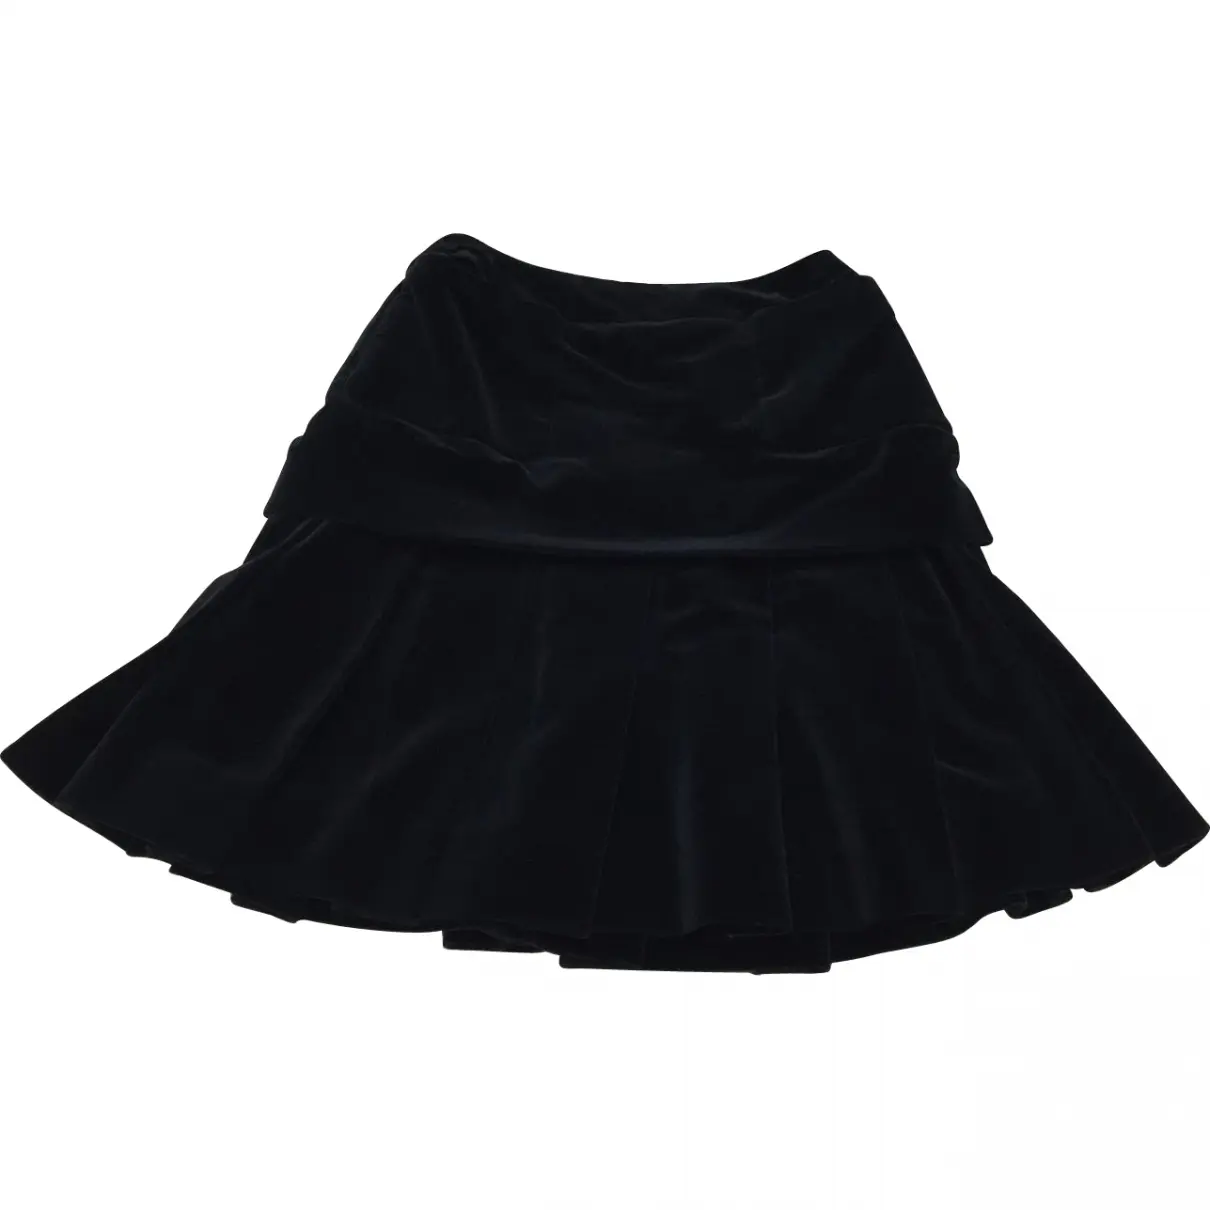 100% Authentic Chanel Boutique Vintage Classic Black Pleaded Skirt Chanel - Vintage